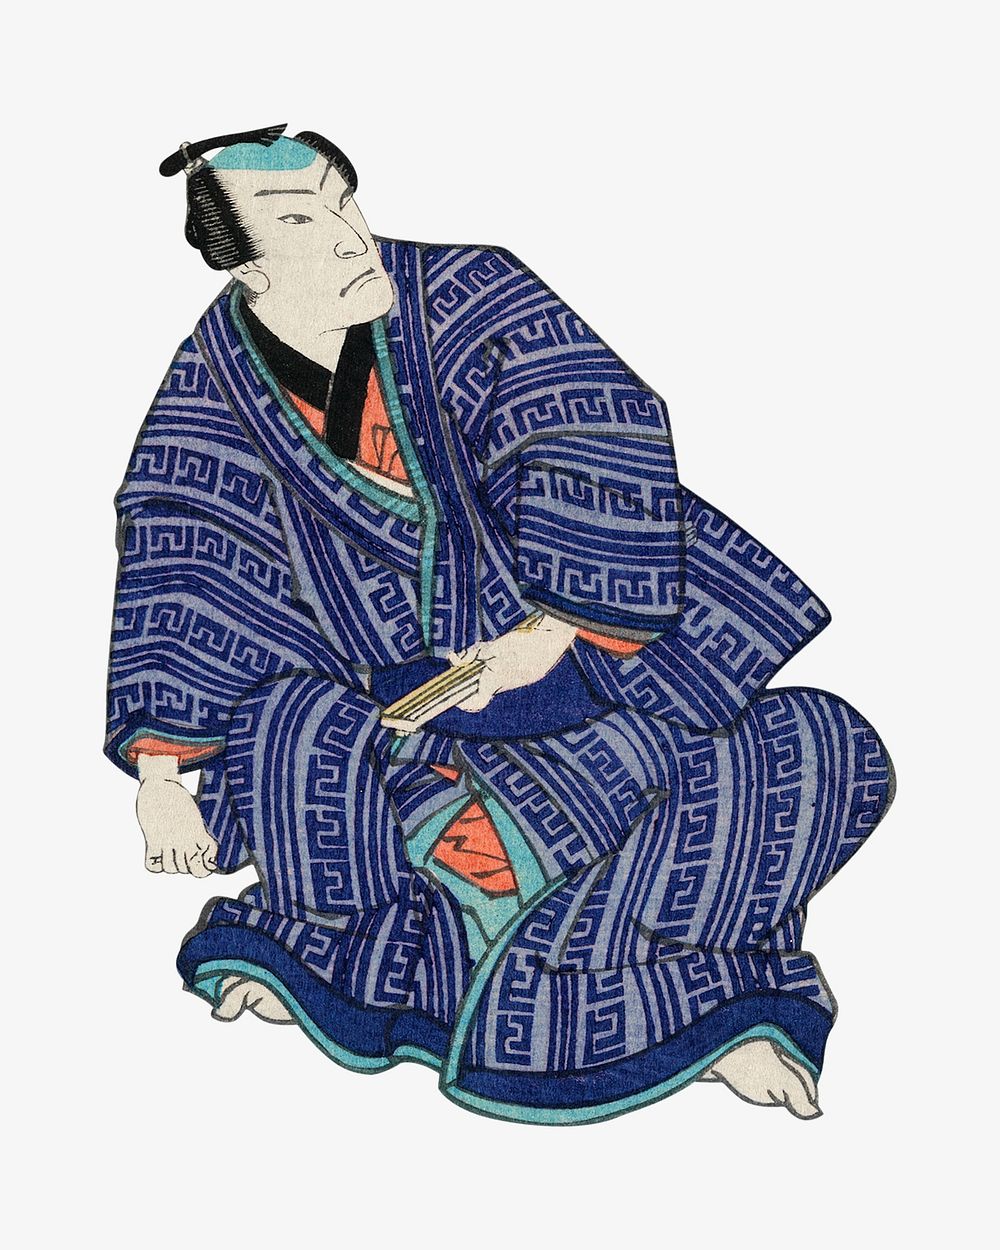 Chotto Hitokuchi Hauta no Ateburi, Japanese ukiyo-e style illustration.  Remixed by rawpixel.